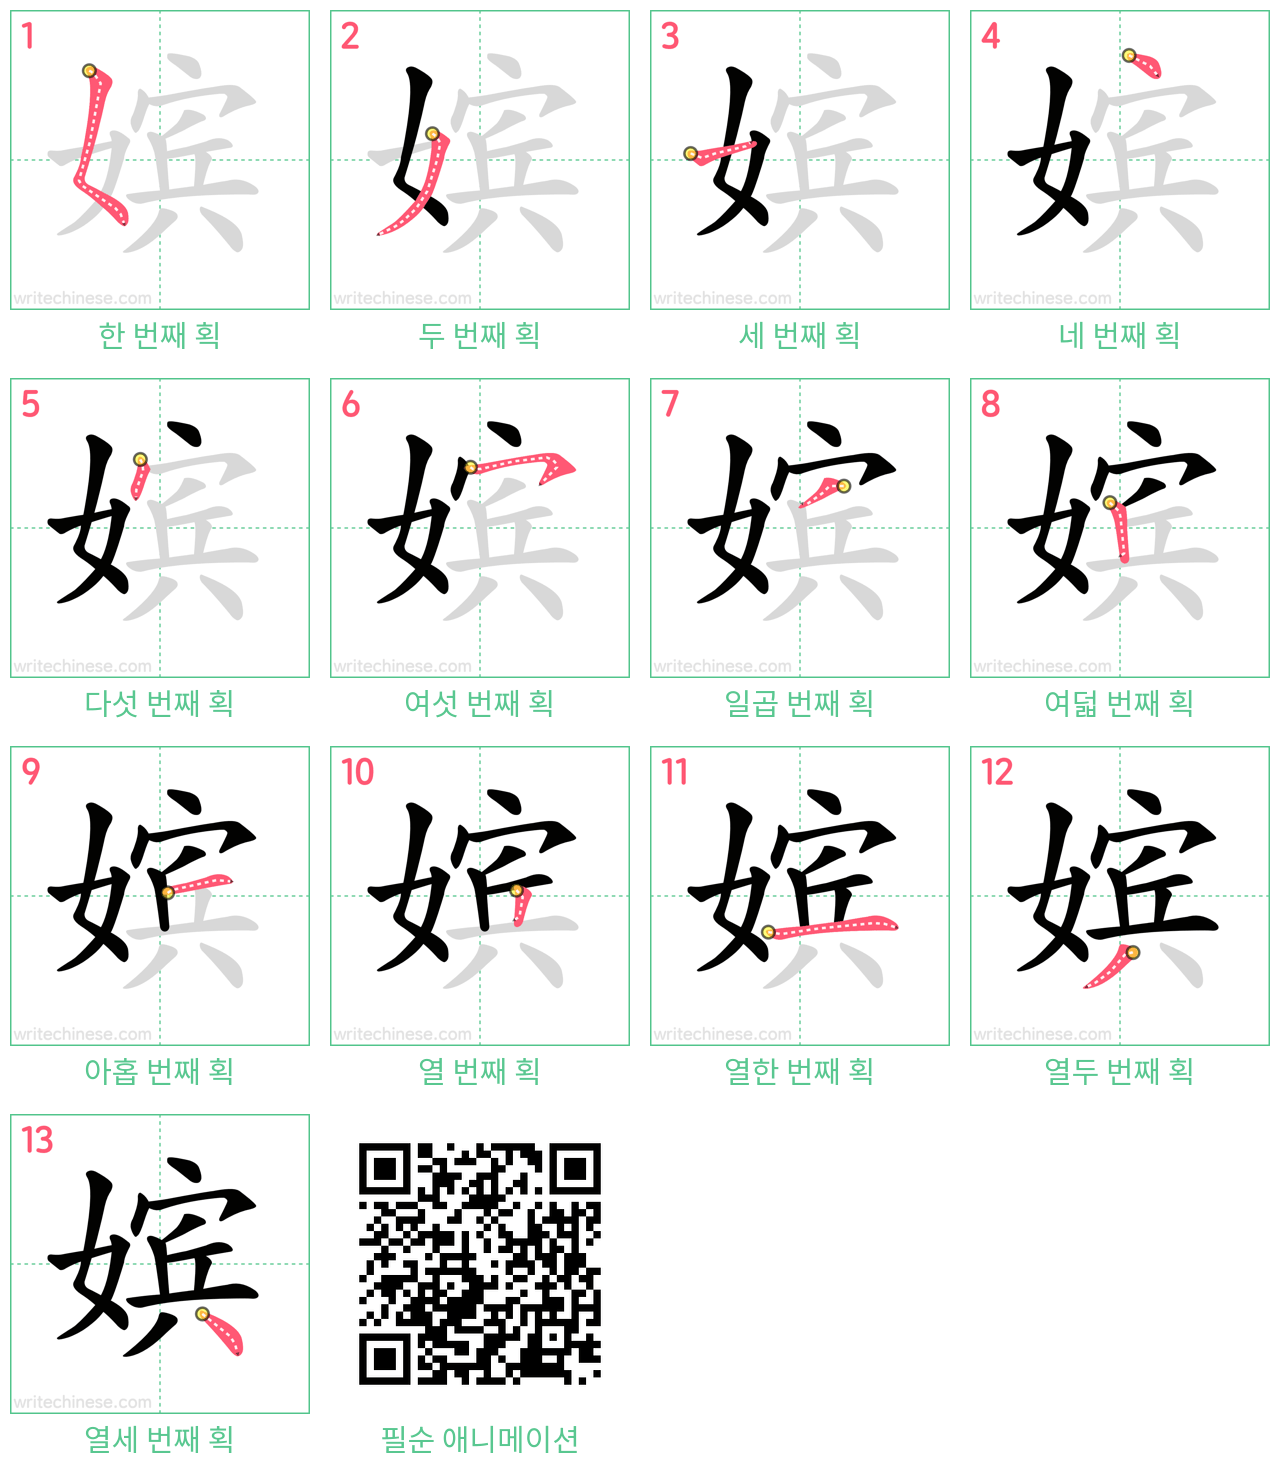 嫔 step-by-step stroke order diagrams